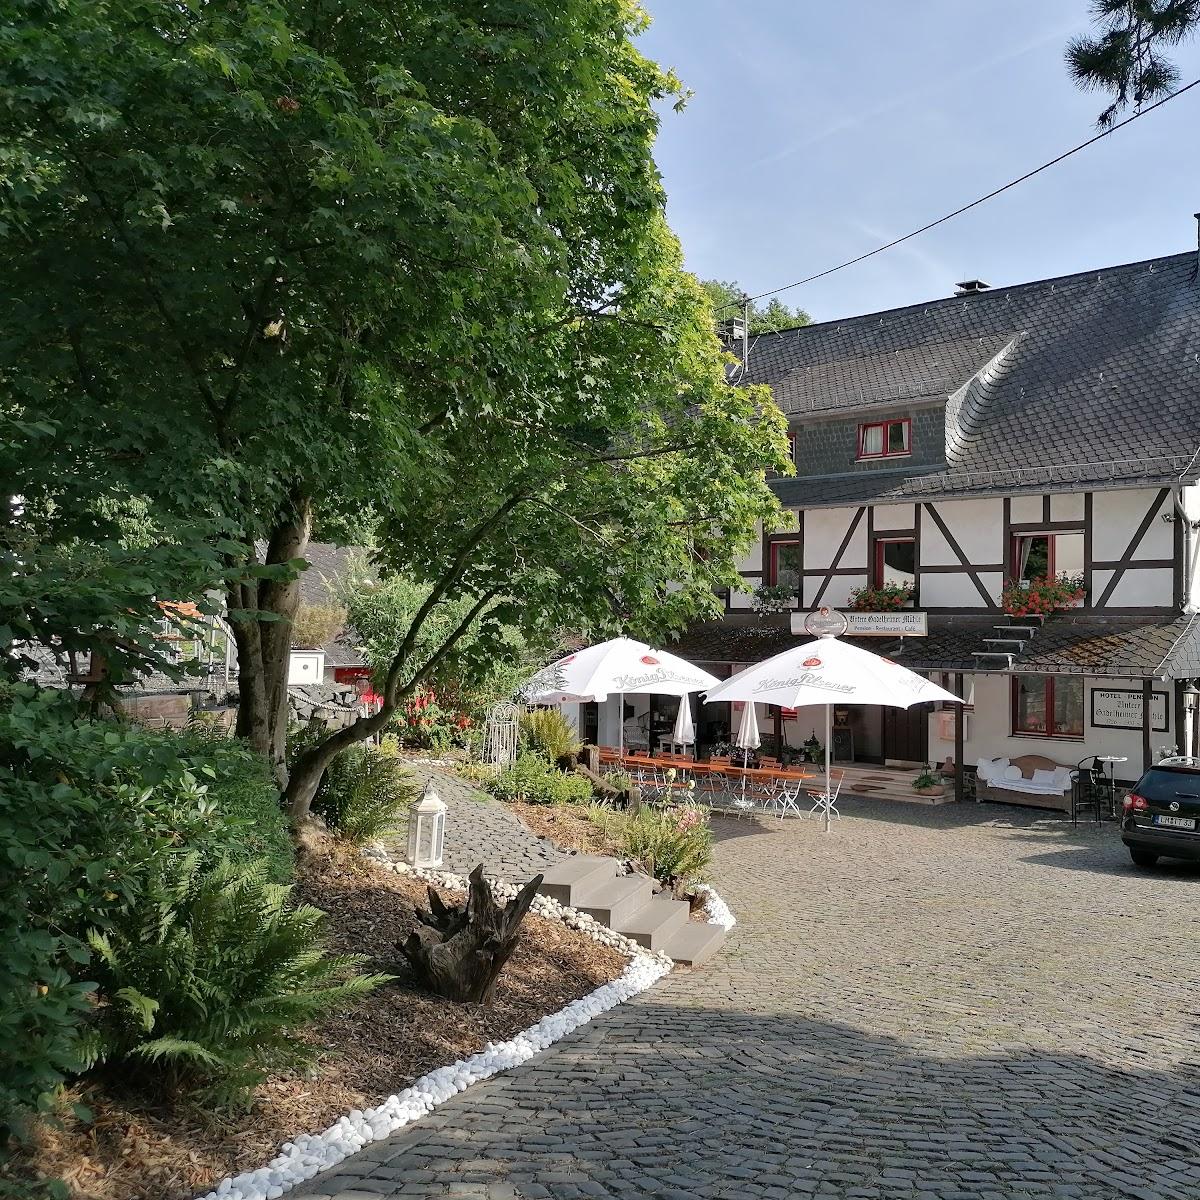 Restaurant "Untere Gadelheimer Mühle - Pension - Café - Restaurant" in Elbtal